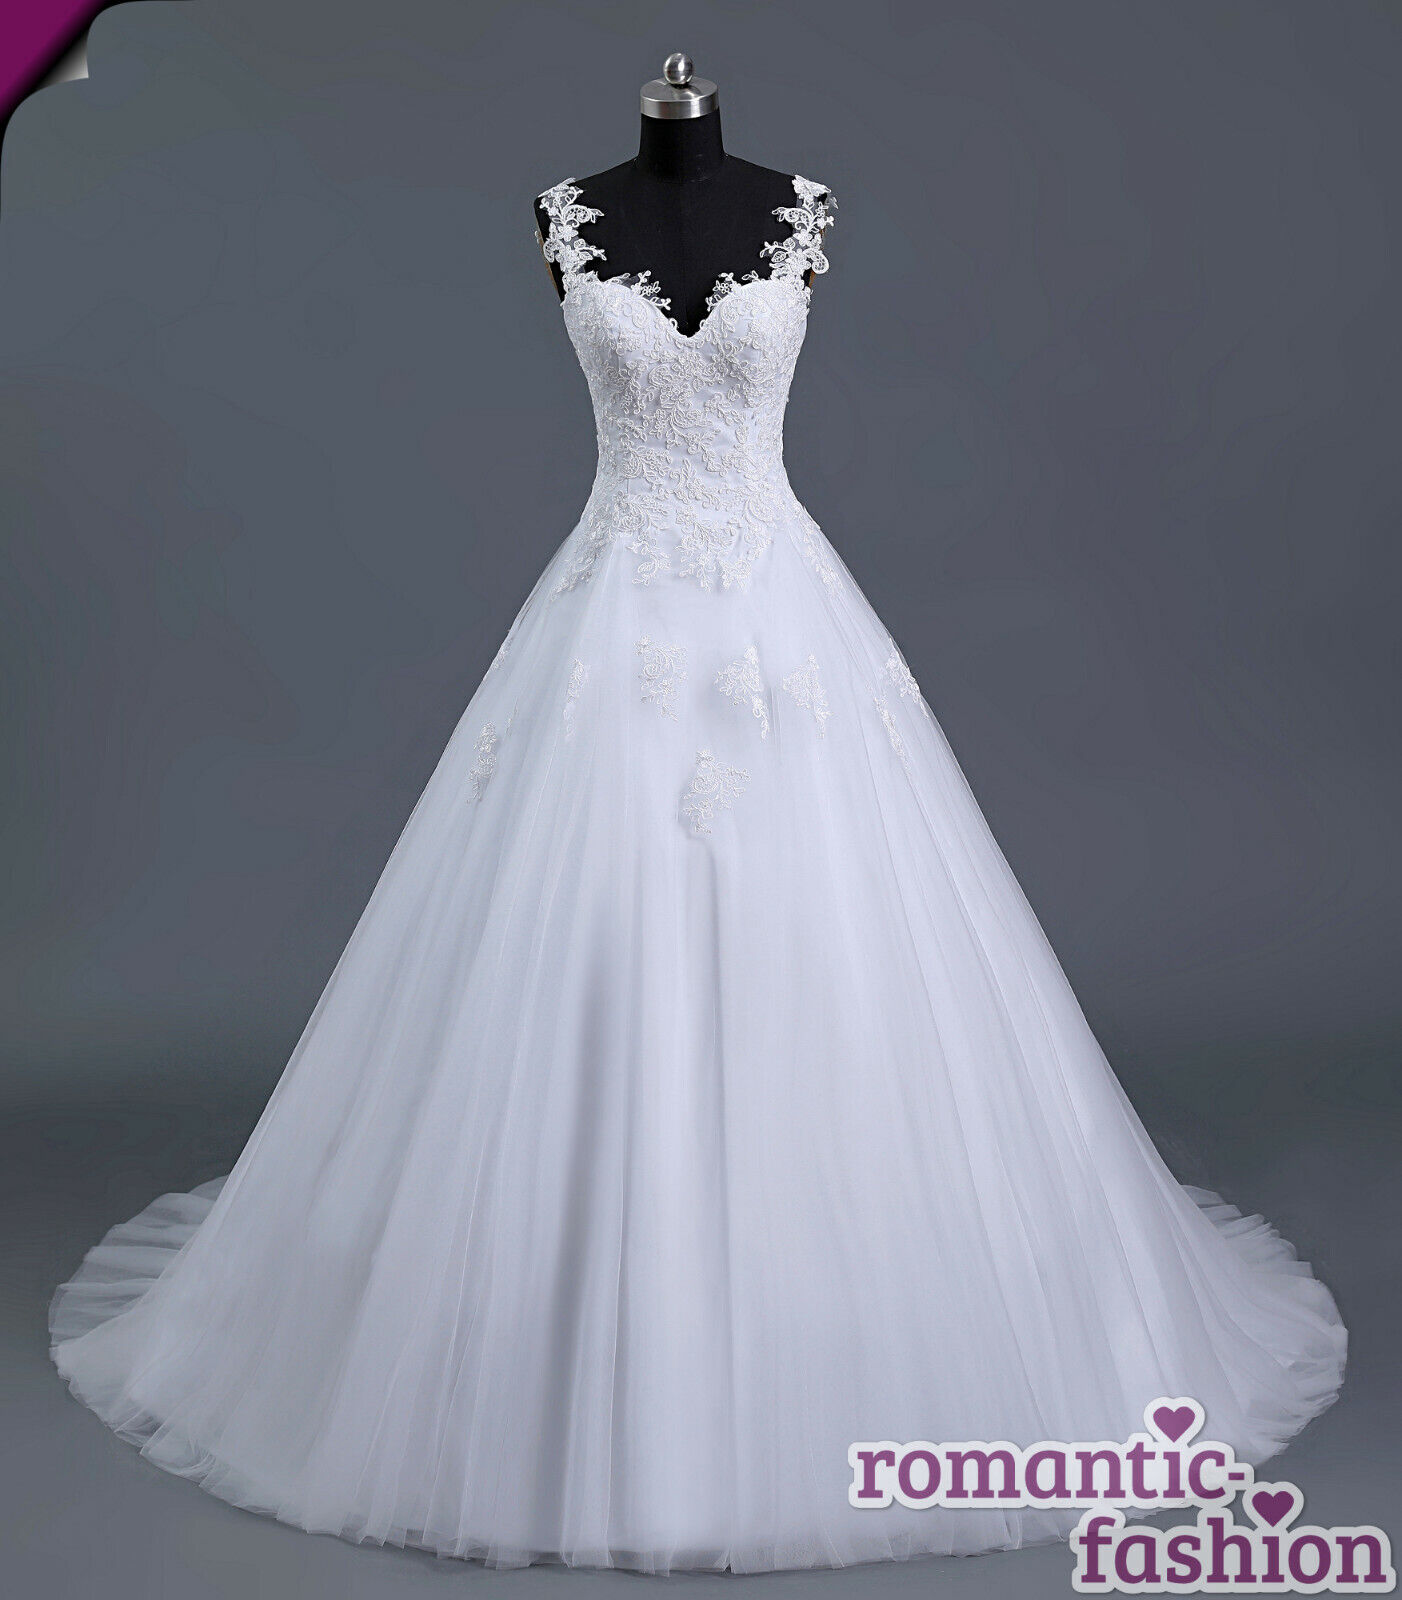  Brautkleid Hochzeitskleid Weiß Größe 34-54 zur AuswahlNEUSOFORTW101